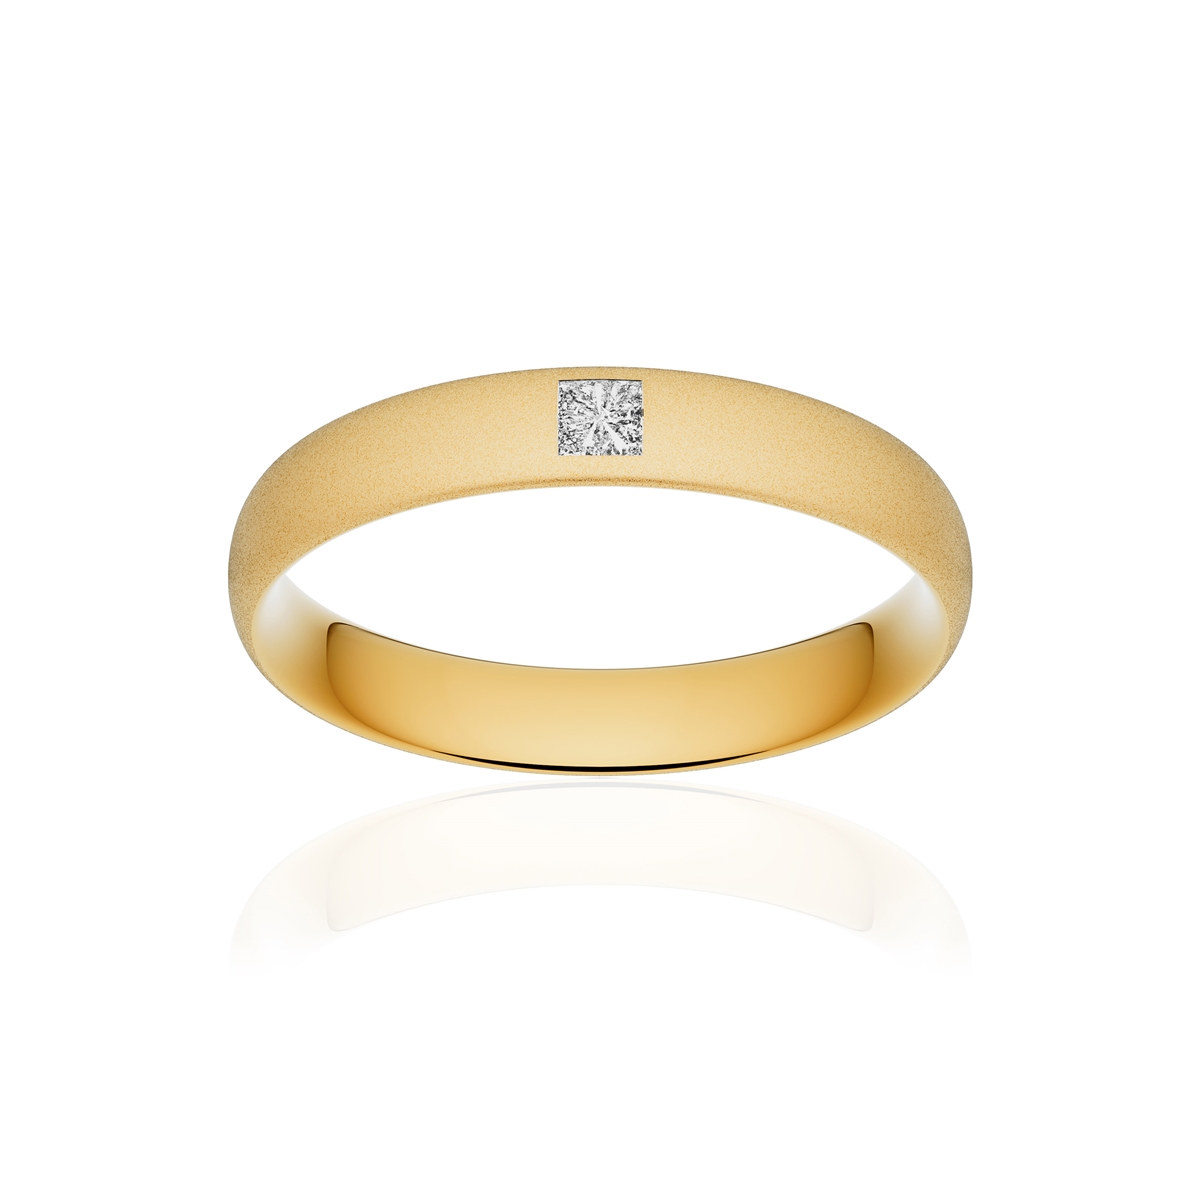 Alliance or 750 jaune sablé demi-jonc confort 4mm diamant princesse